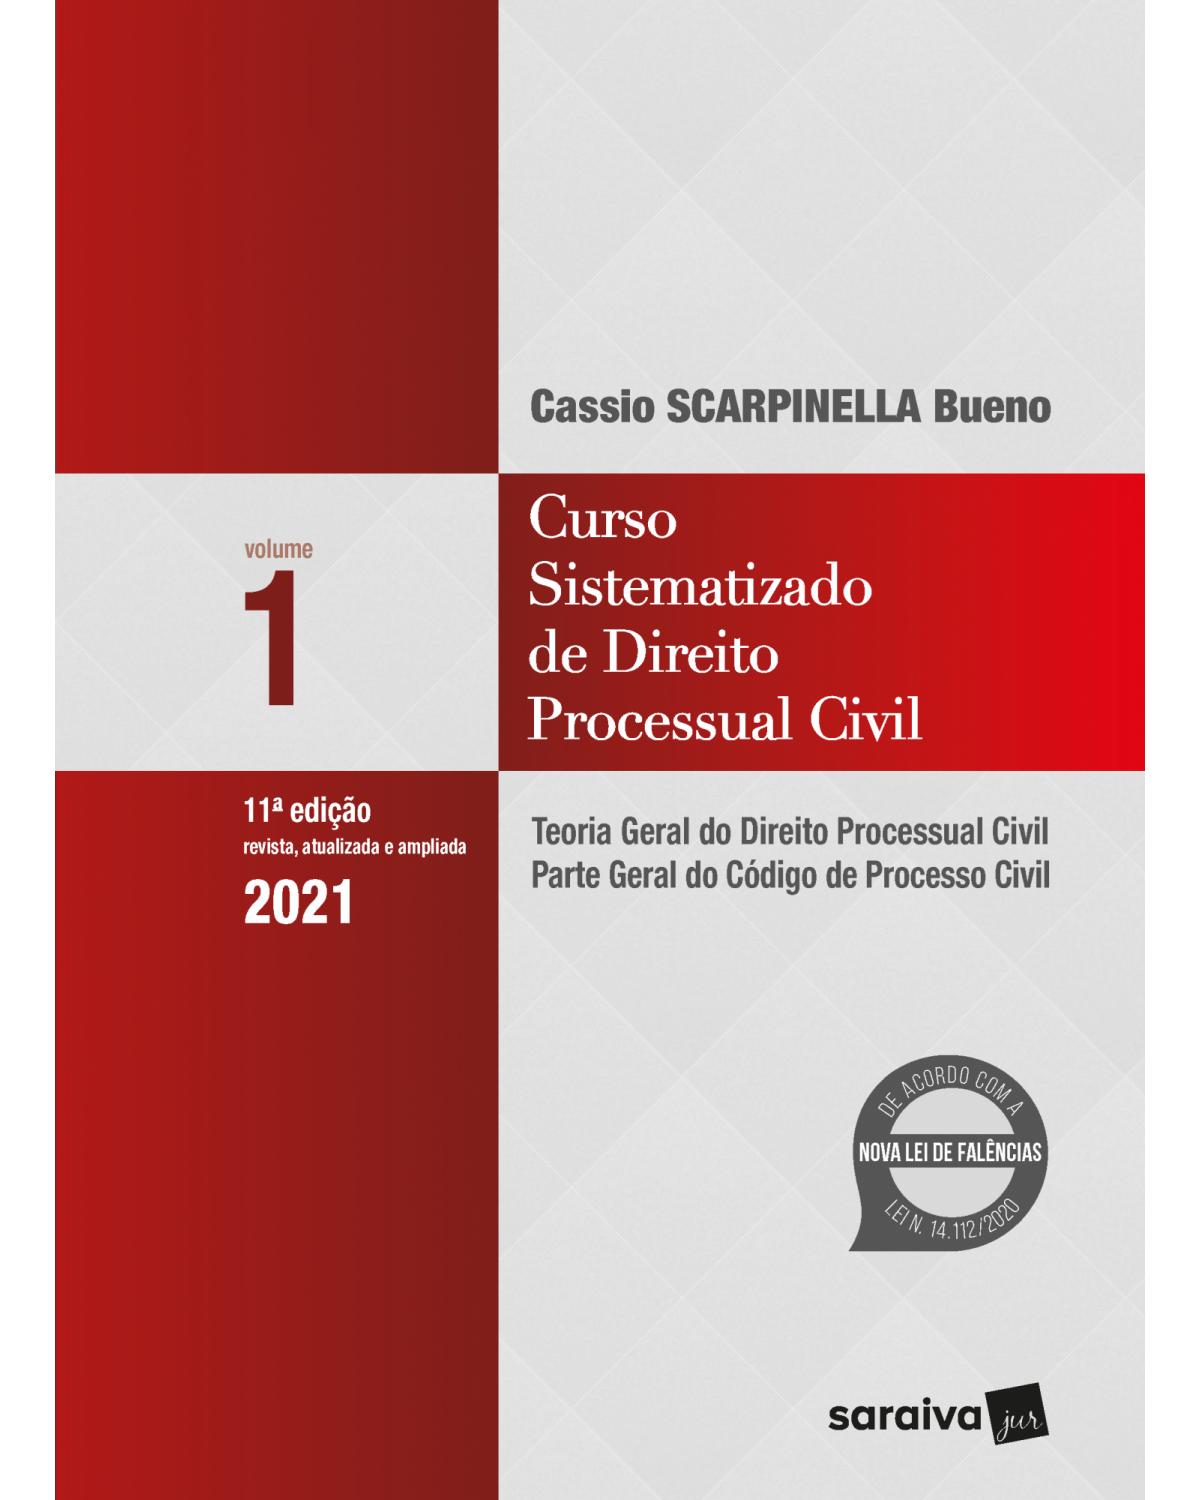 Curso sistematizado de direito processual civil - Volume 1: teoria geral do direito processual civil - Parte geral do código de processo civil - 11ª Edição | 2021